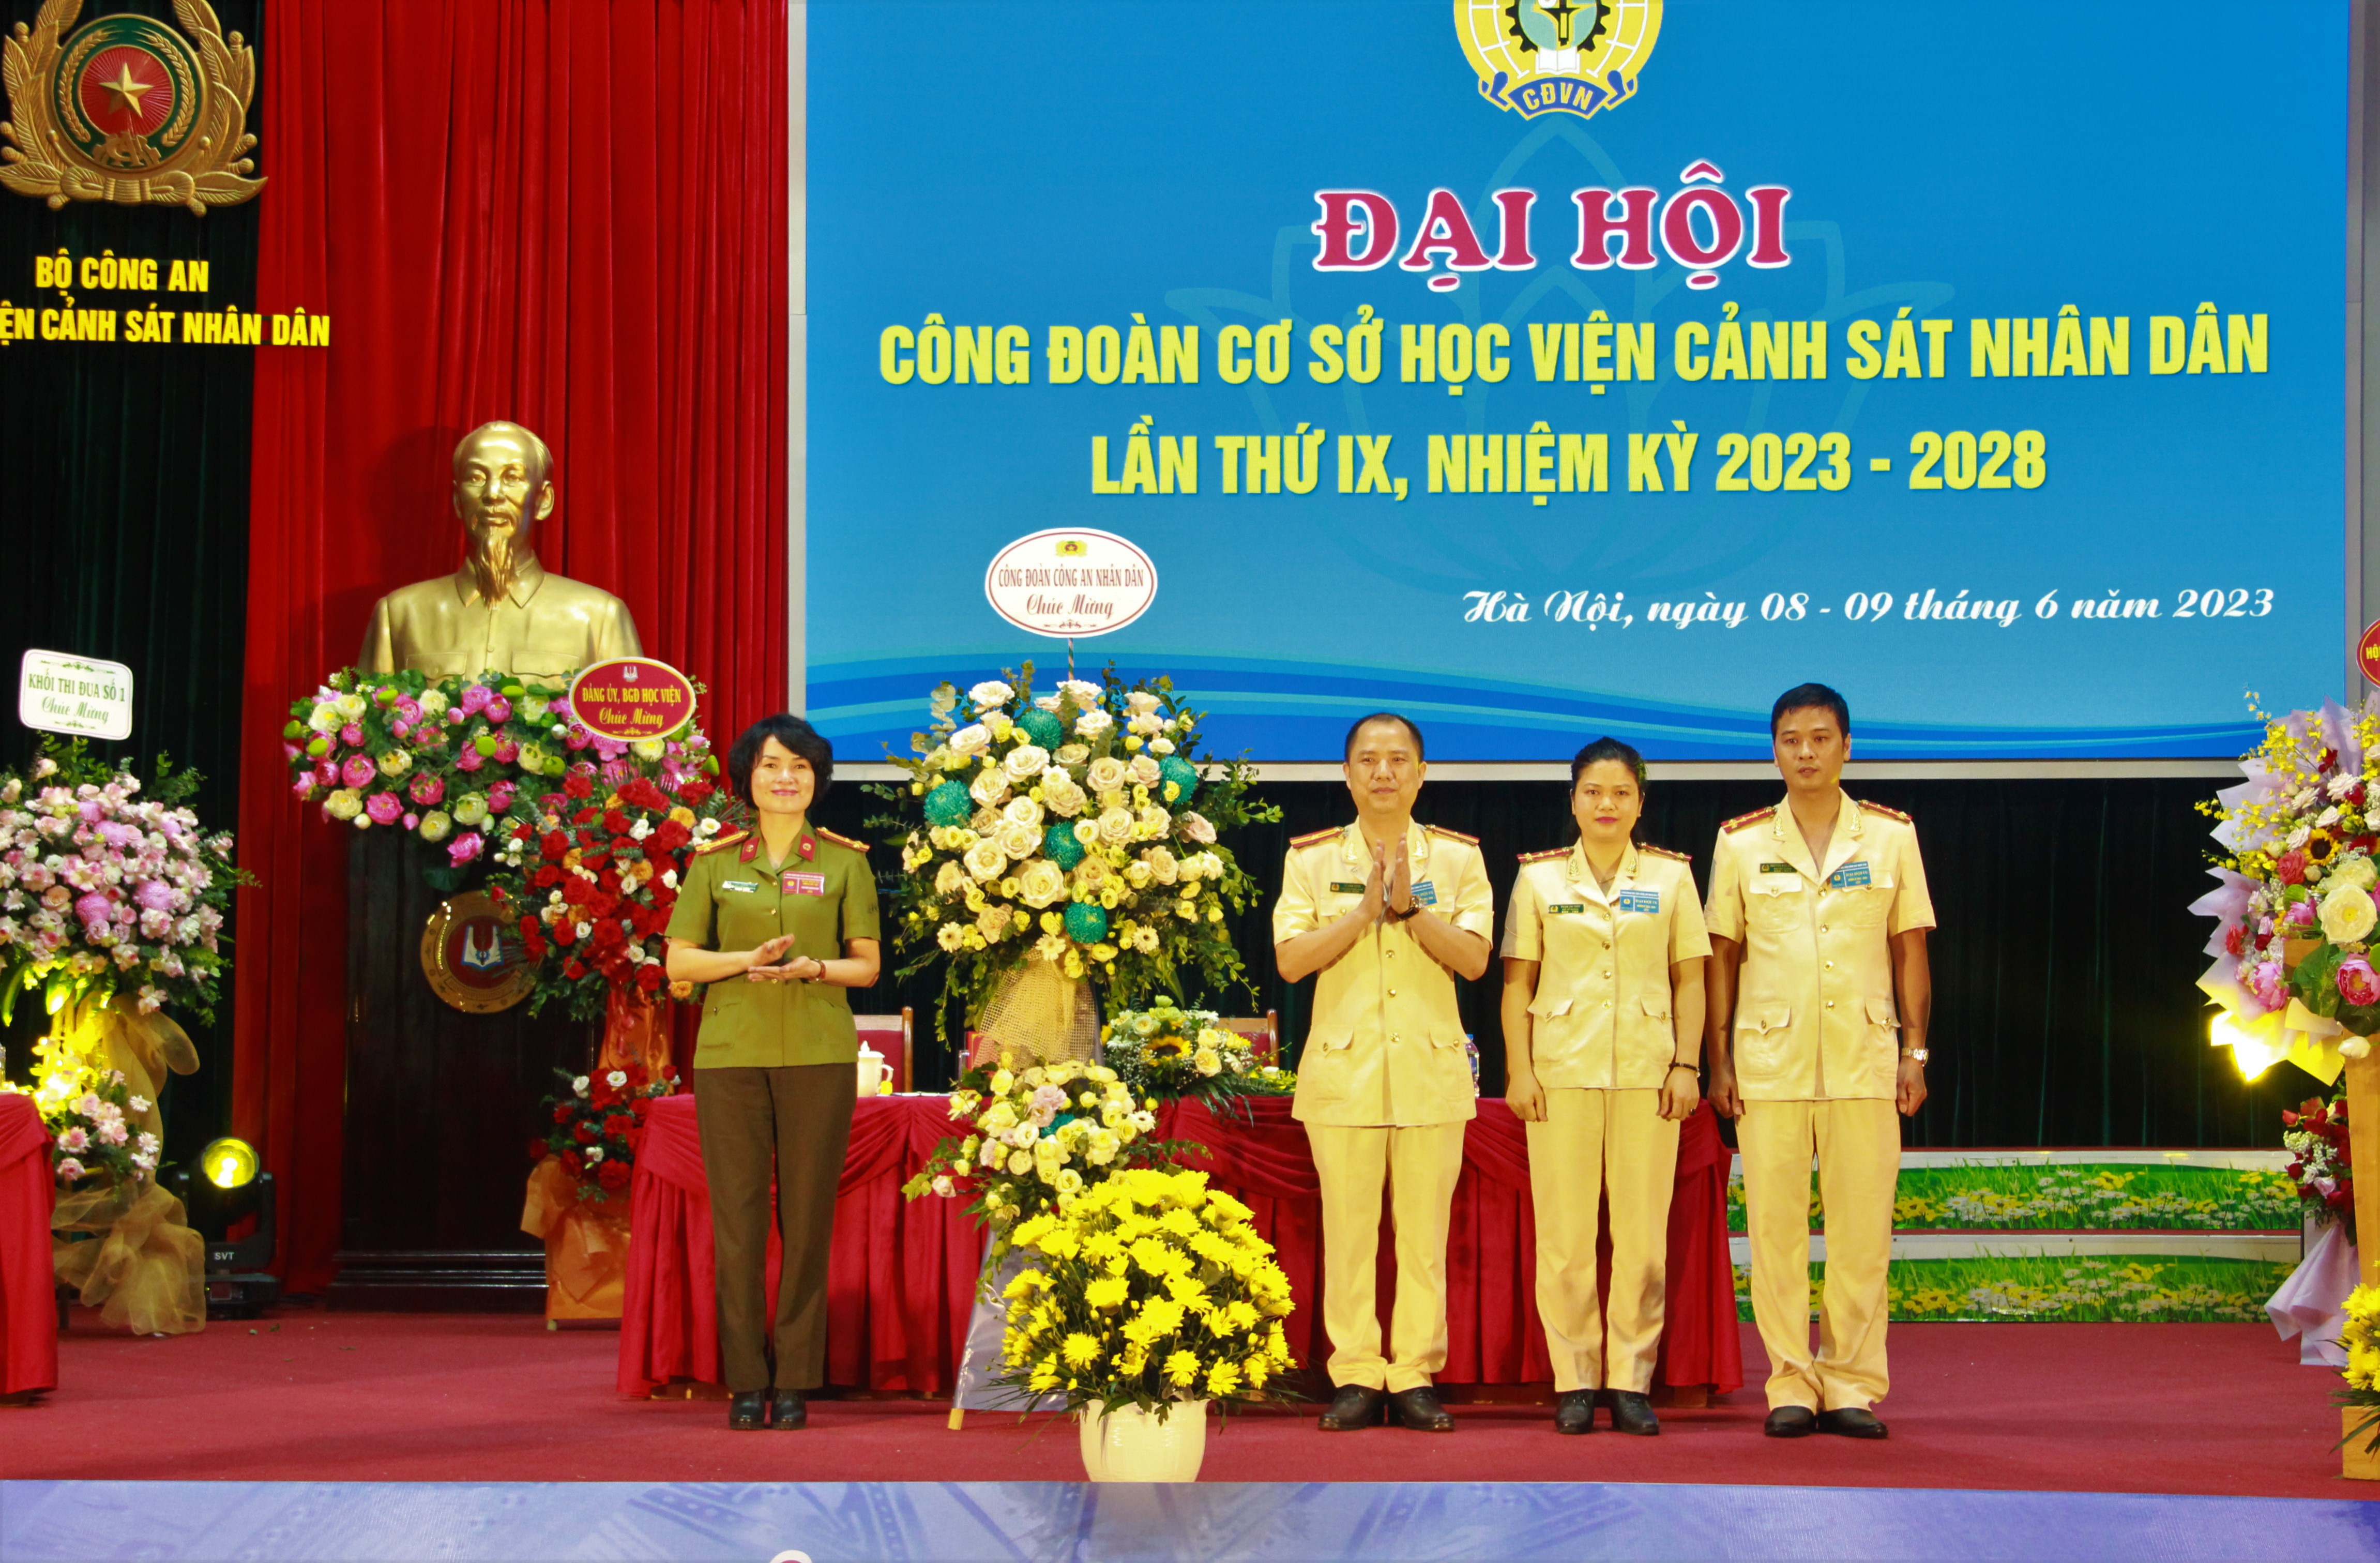 Thiếu tướng Nguyễn Đắc Hoan, Phó Giám đốc Học viện và Thượng tá Công Thanh Thảo, Trưởng ban Công đoàn CAND tặng hoa chúc mừng Đại hội